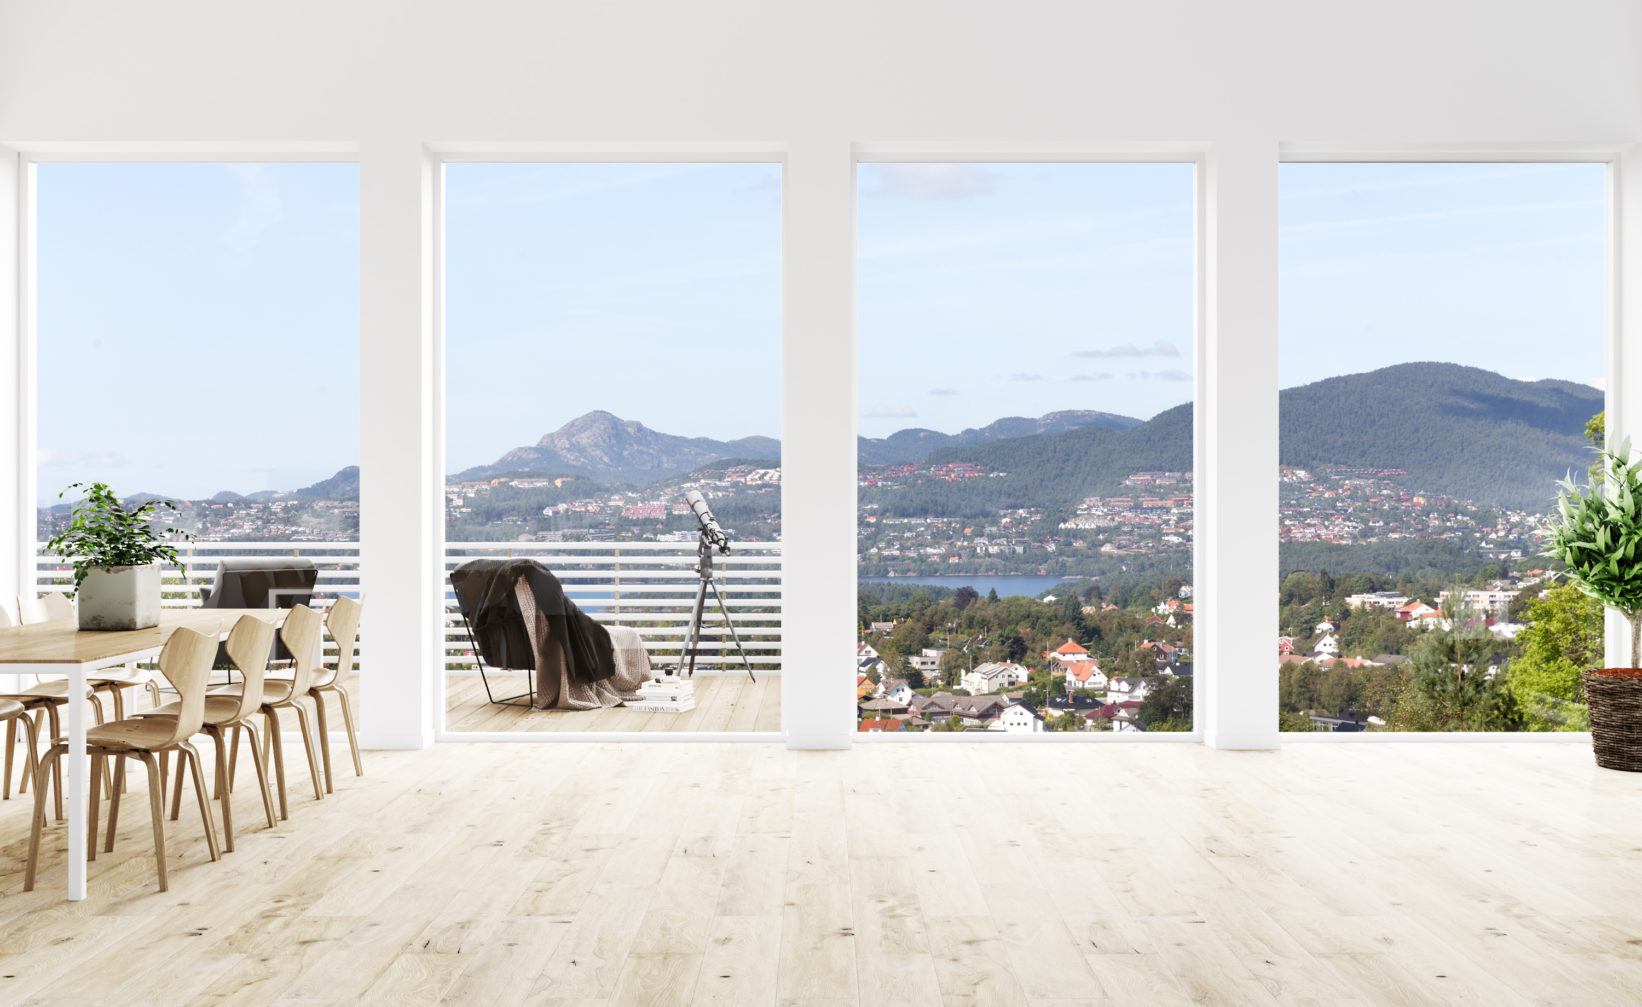 En stue med store vinduer og utsikt mot fjellet, visualisert for salg av Bruaas & Kalve i 2017 for oppdragsgiver Teslo.